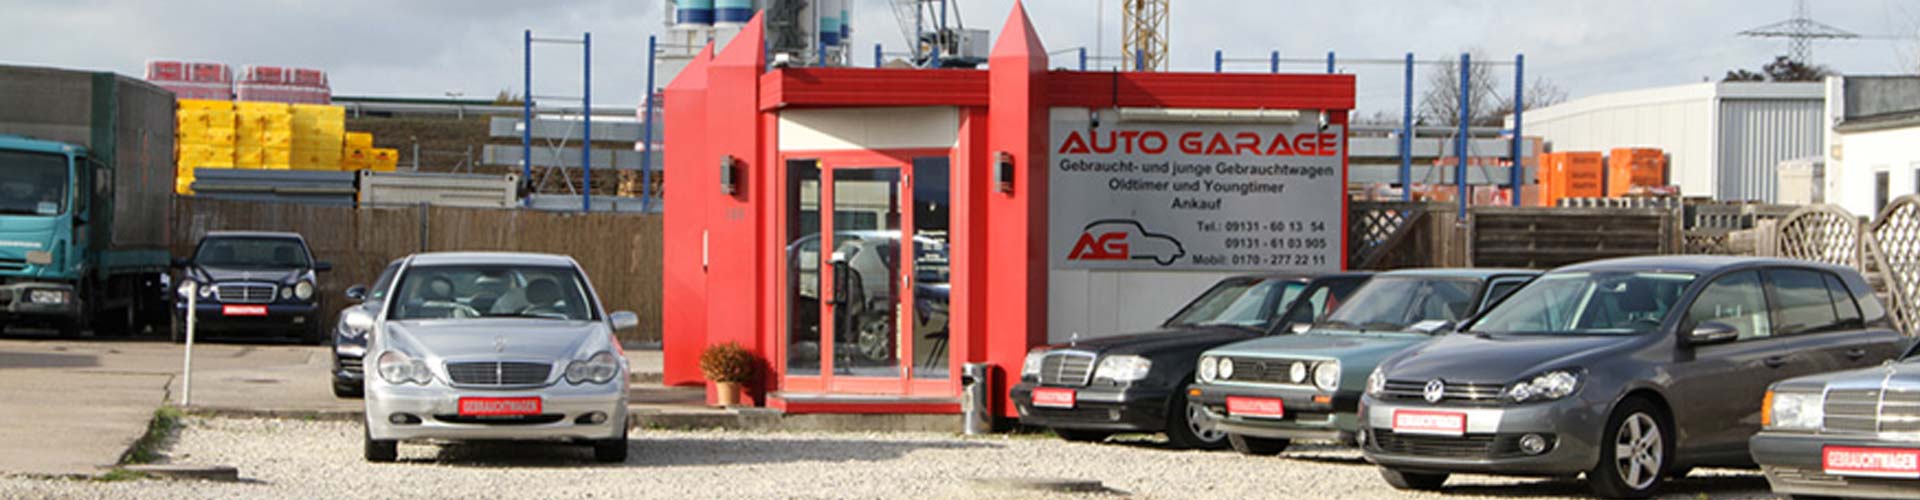 Gebrauchtwagen kaufen Auto kaufen verkaufen Erlangen